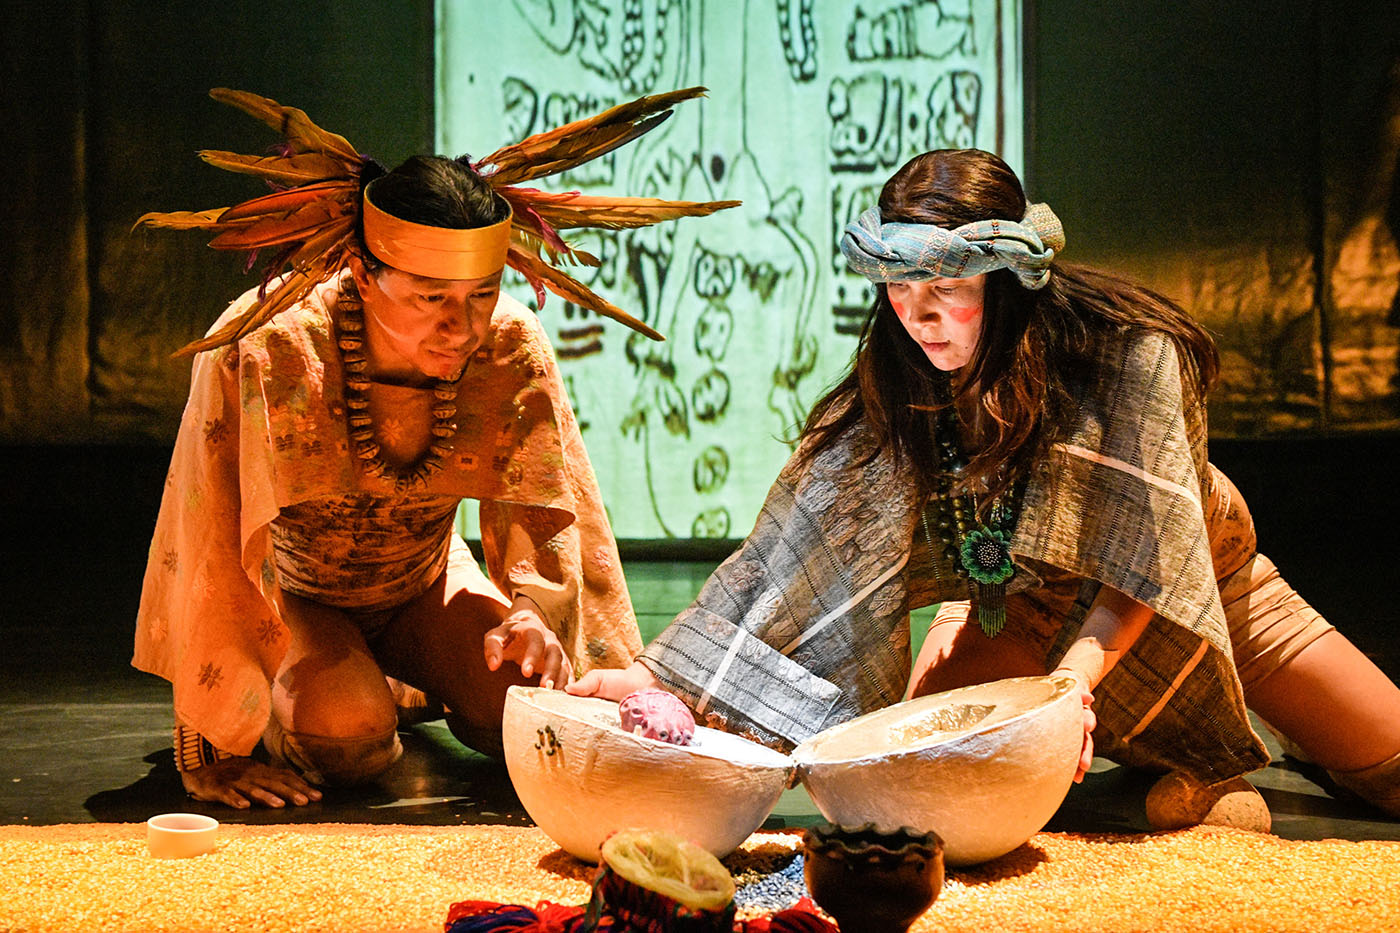 Productions Ondinnok, TLAKENTLI, spectacle danse-théâtre autochtone, mise en scène de Yves Sioui Durand